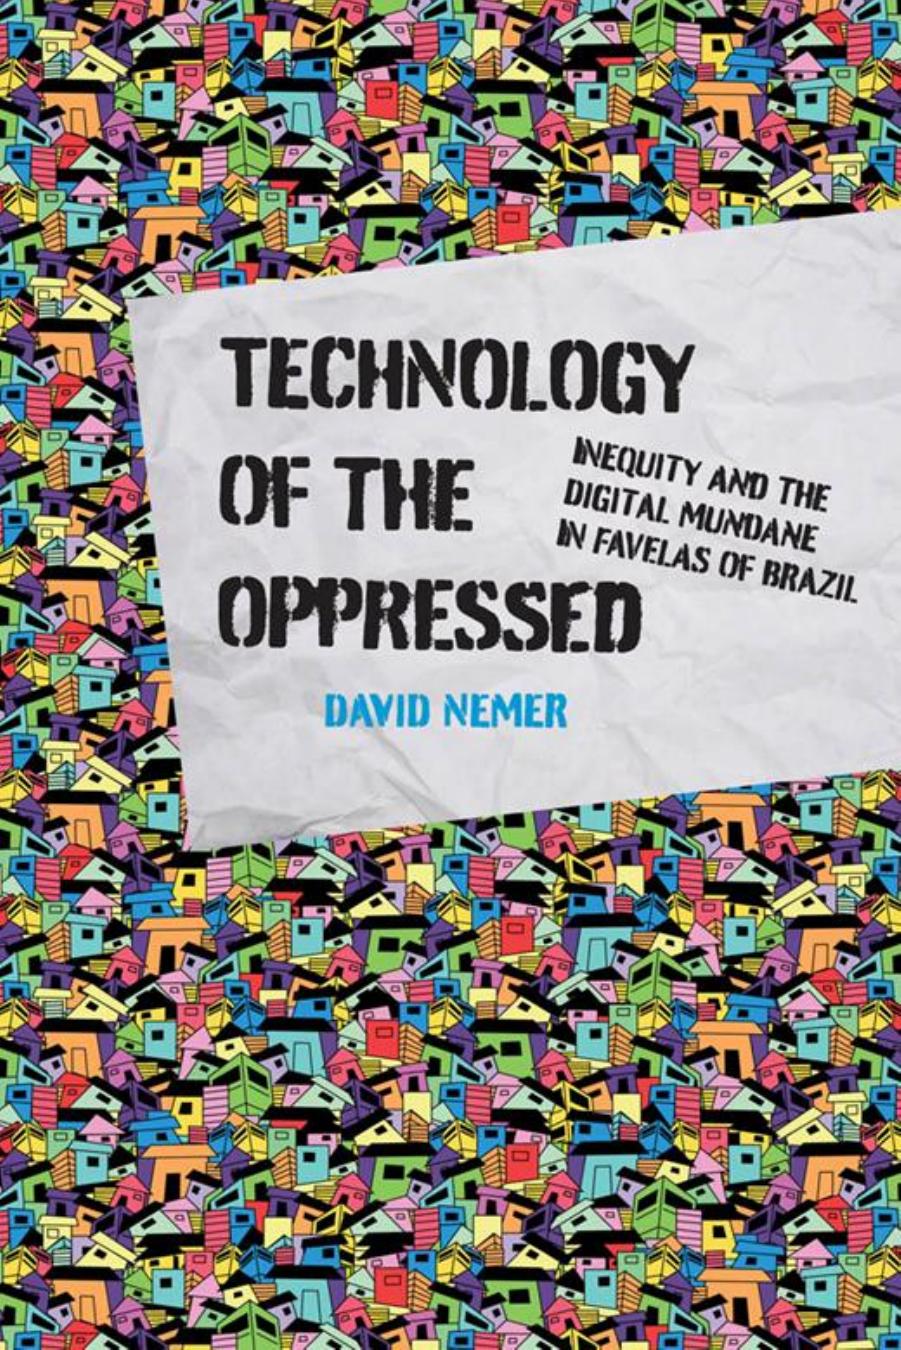 Technology Of The Oppressed Inequity And The Digital Mundane In Favelas Of Brazil (David Nemer) (z-lib.org)